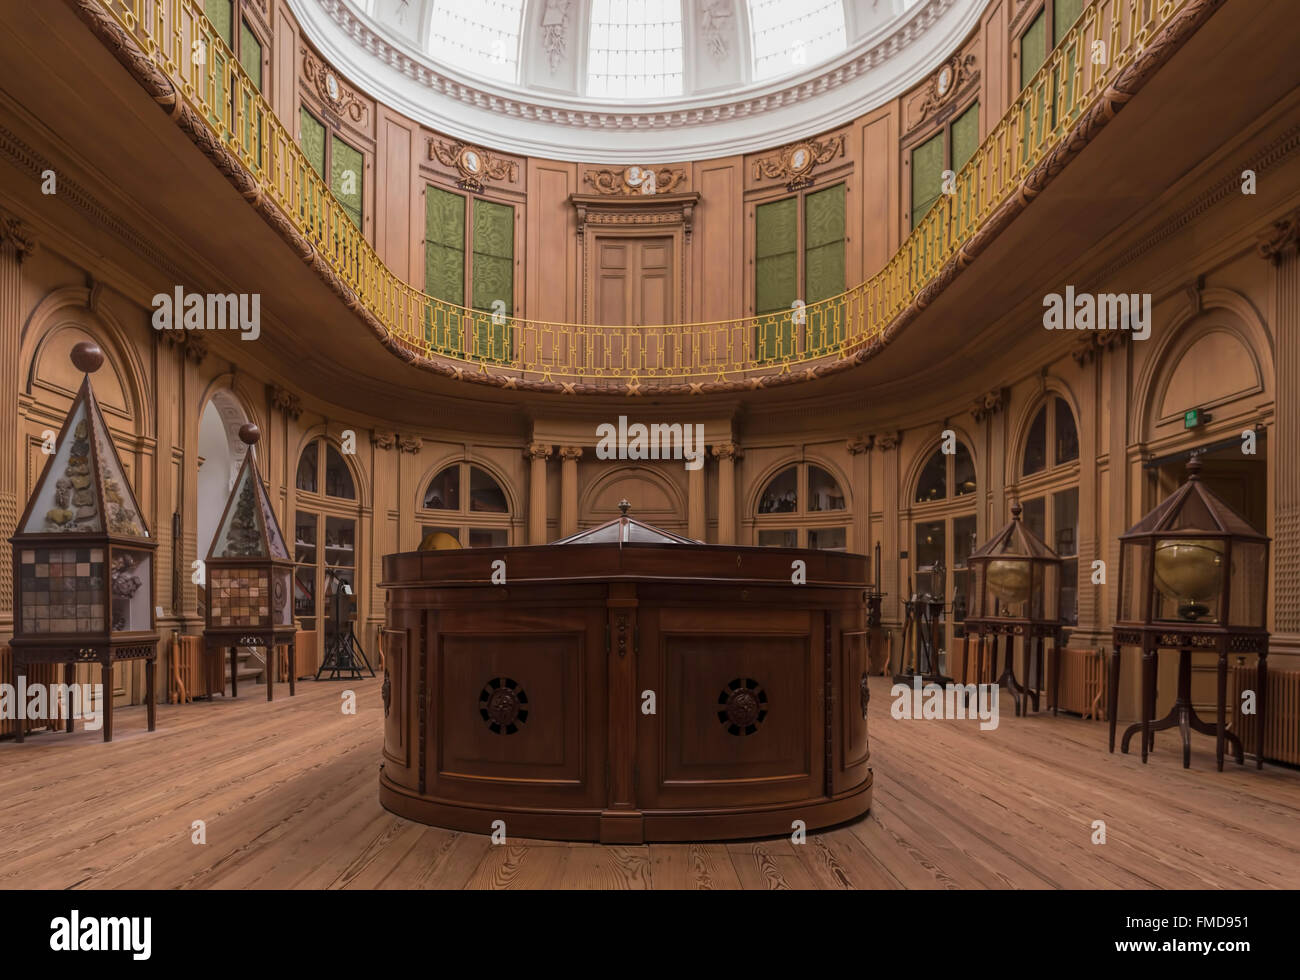 Una gran vitrina de madera, coloca centralmente en la Sala Oval en el Teylers Museum de Haarlem, Holanda Septentrional, en los Países Bajos. Foto de stock